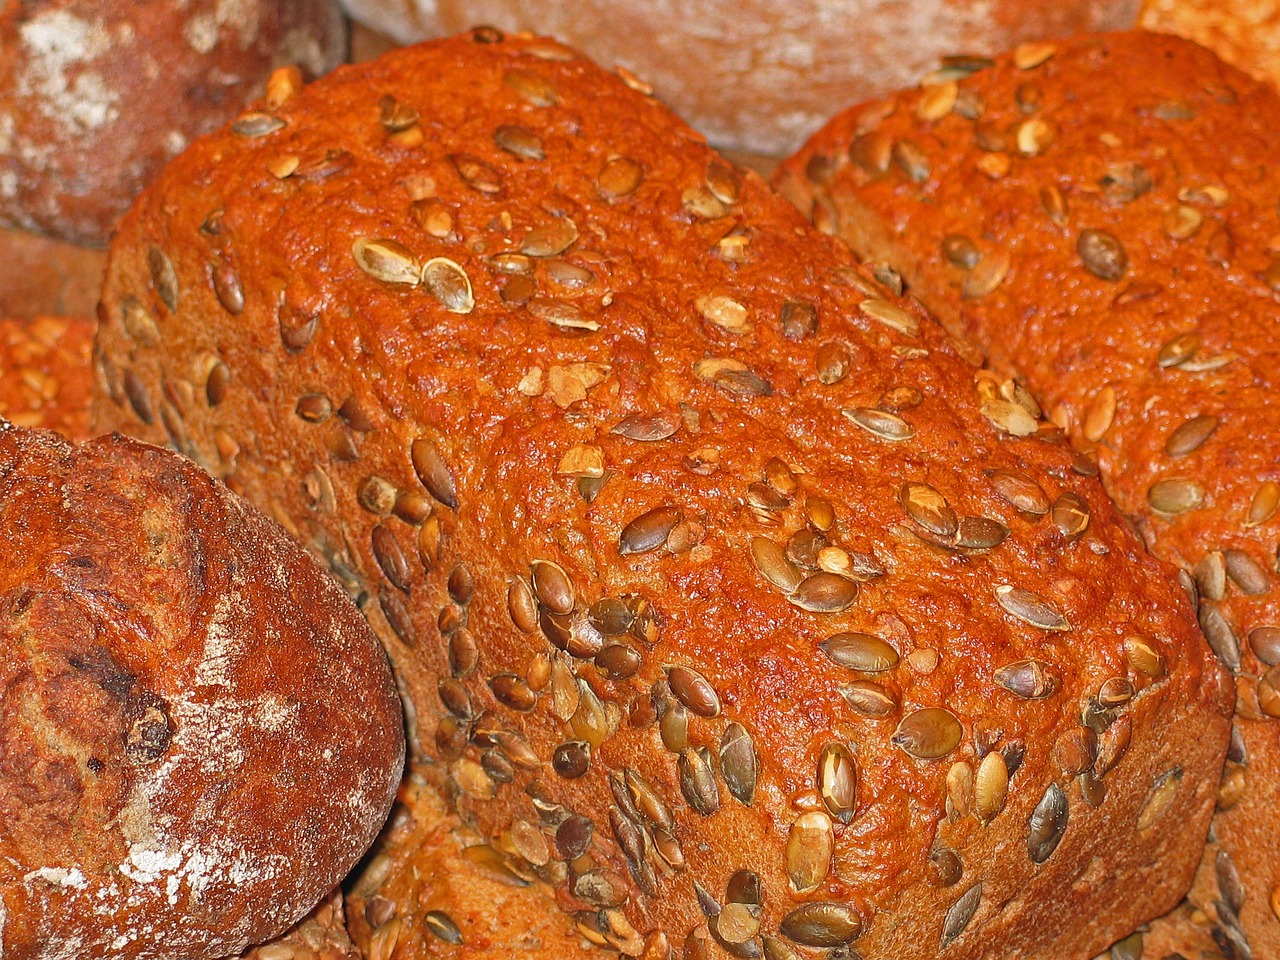 Cranberry Pumpkin Bread